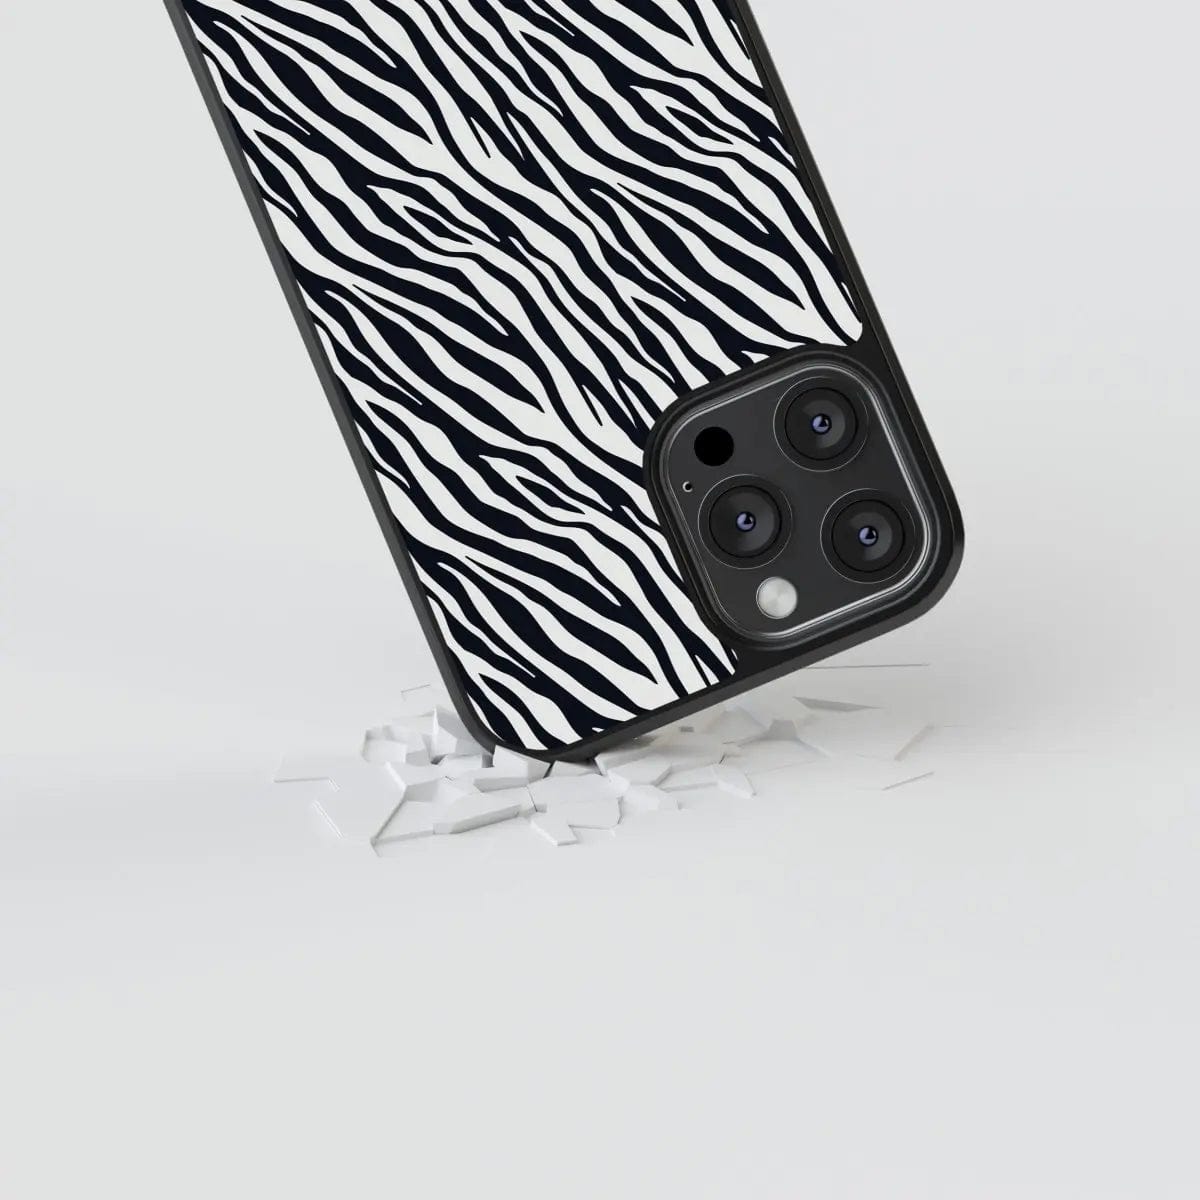 Phone case "Zebra" - Artcase